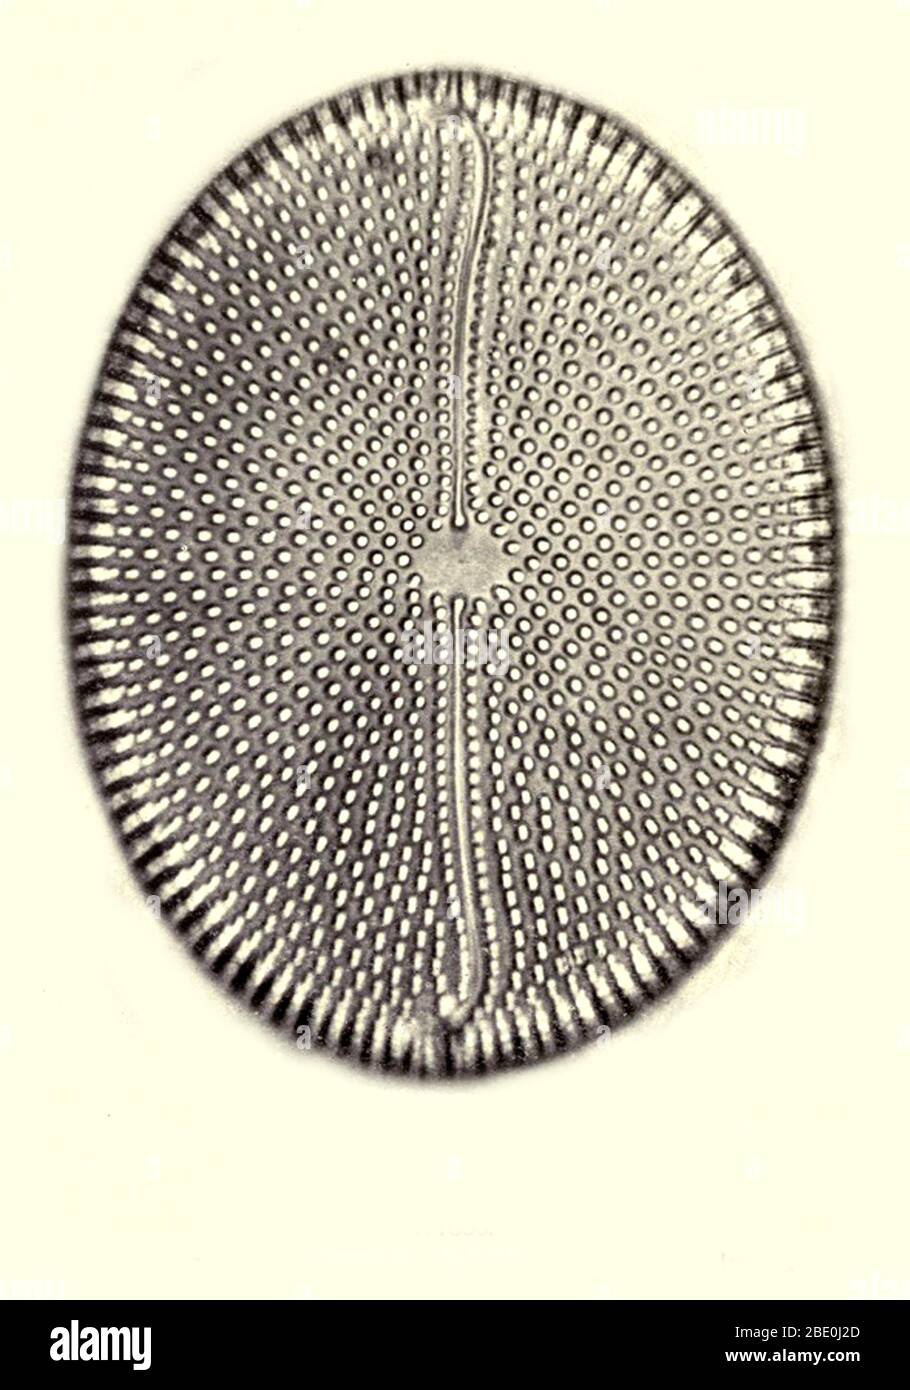 Diatomea, de Bori, Hungría. Ampliación: 1000x. Fotomicrografía realizada por Arthur E Smith a principios de 1900, utilizando un microscopio y una cámara combinados. En 1904, la Royal Society de Londres exhibió al público una serie de fotomicrografías de Smith. Más tarde fueron publicados en 1909 en un libro llamado 'Nature Through Microscope & Camera'. Fueron los primeros ejemplos de fotomicroscopía que muchos habían visto. Foto de stock